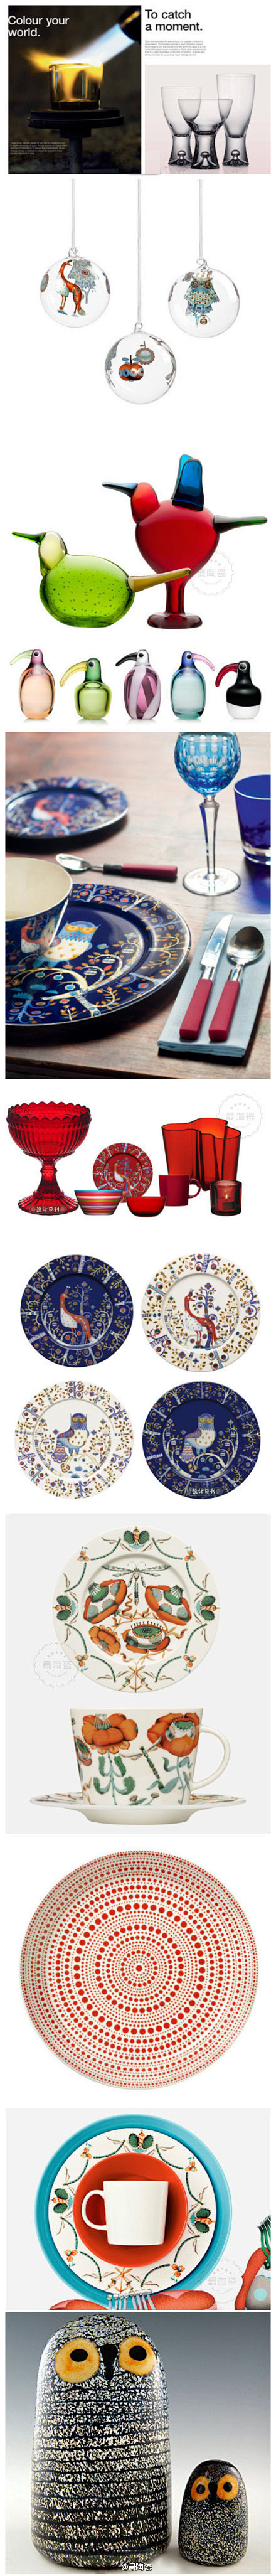 芬兰国宝品牌iittala玻璃、陶瓷制品...